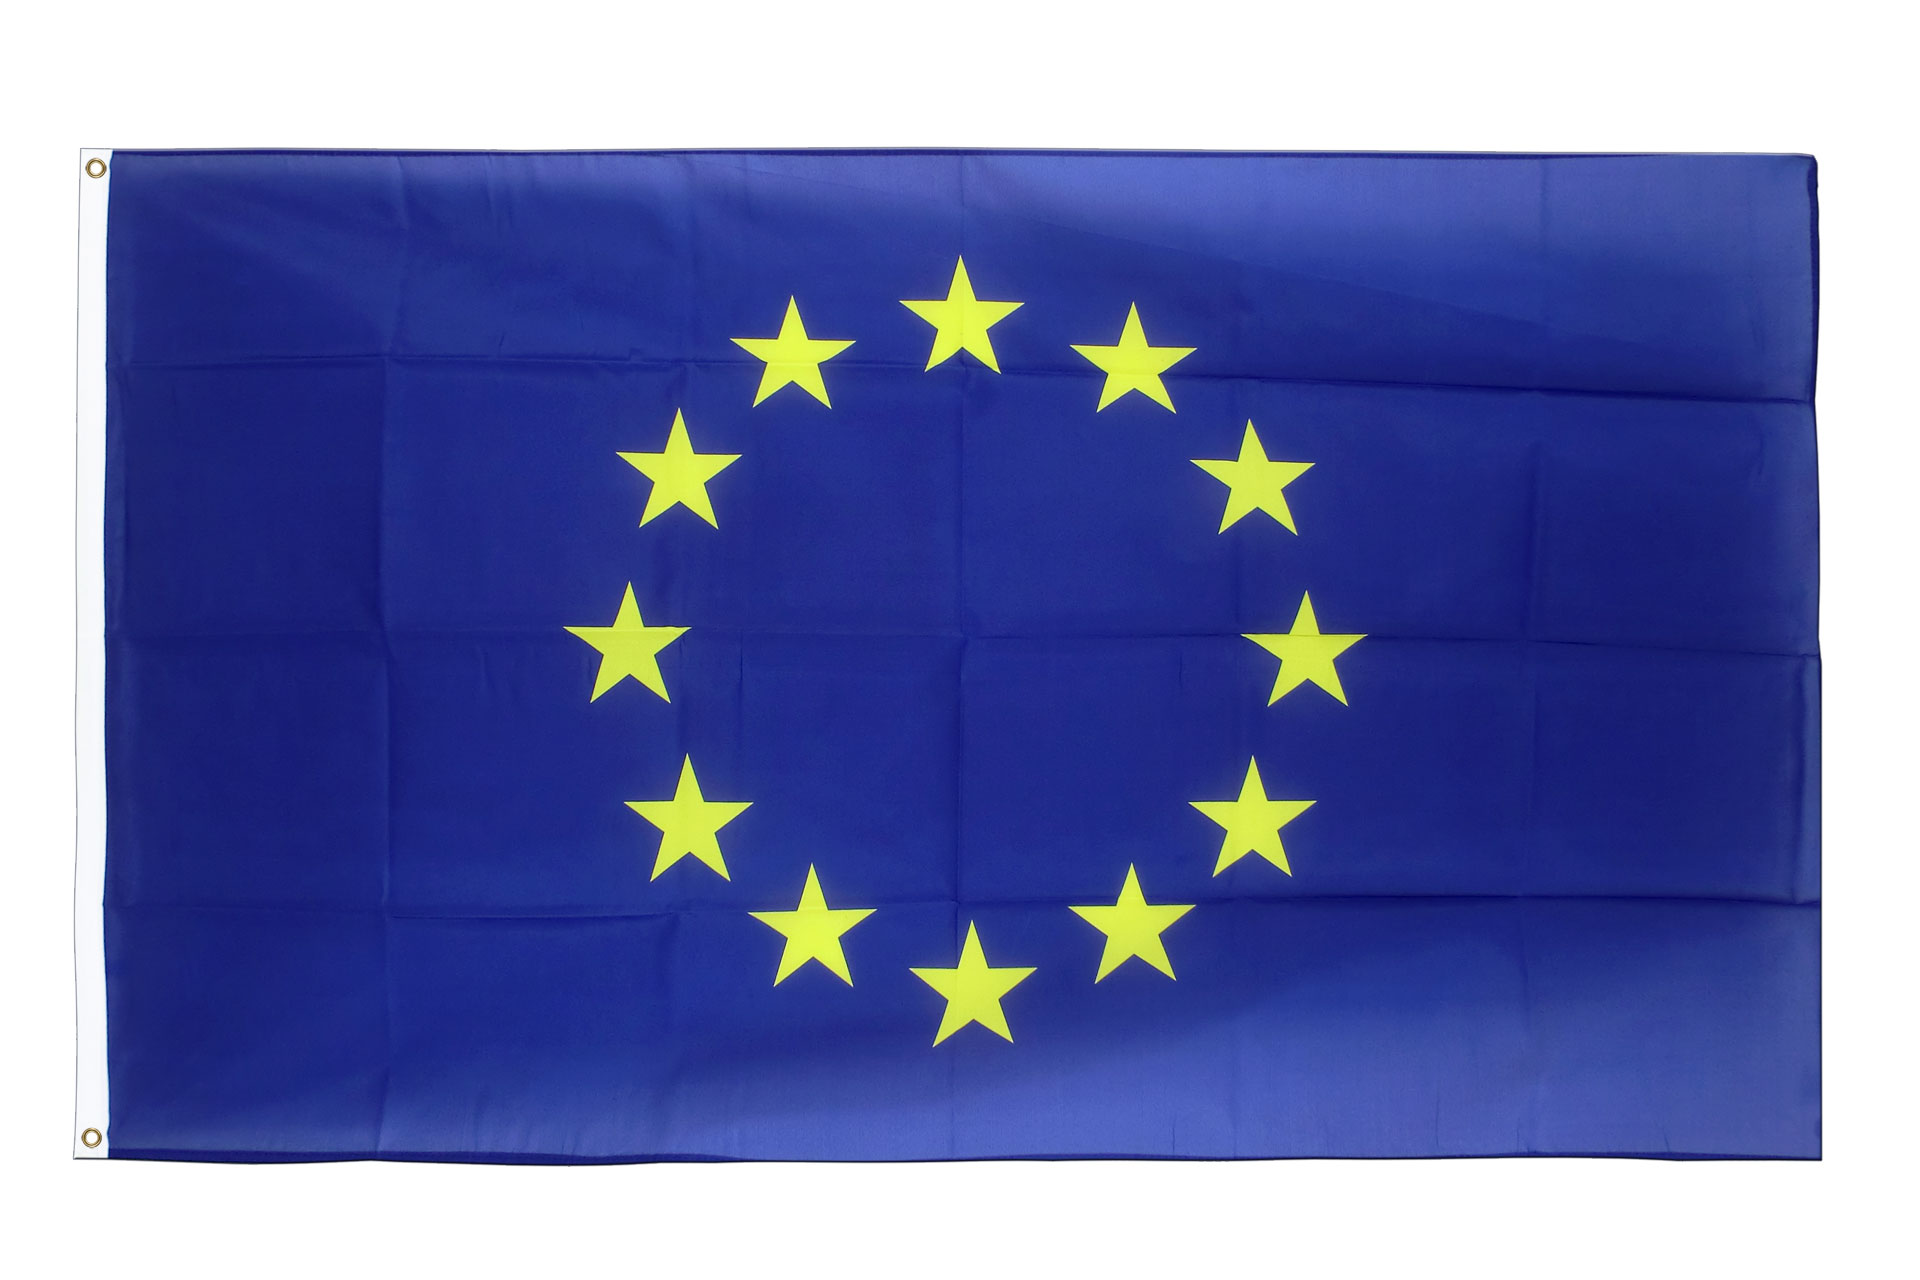 Portofrei robuster Flaggenstoff bis 40cm Flagge / Fahne Europäische Union 